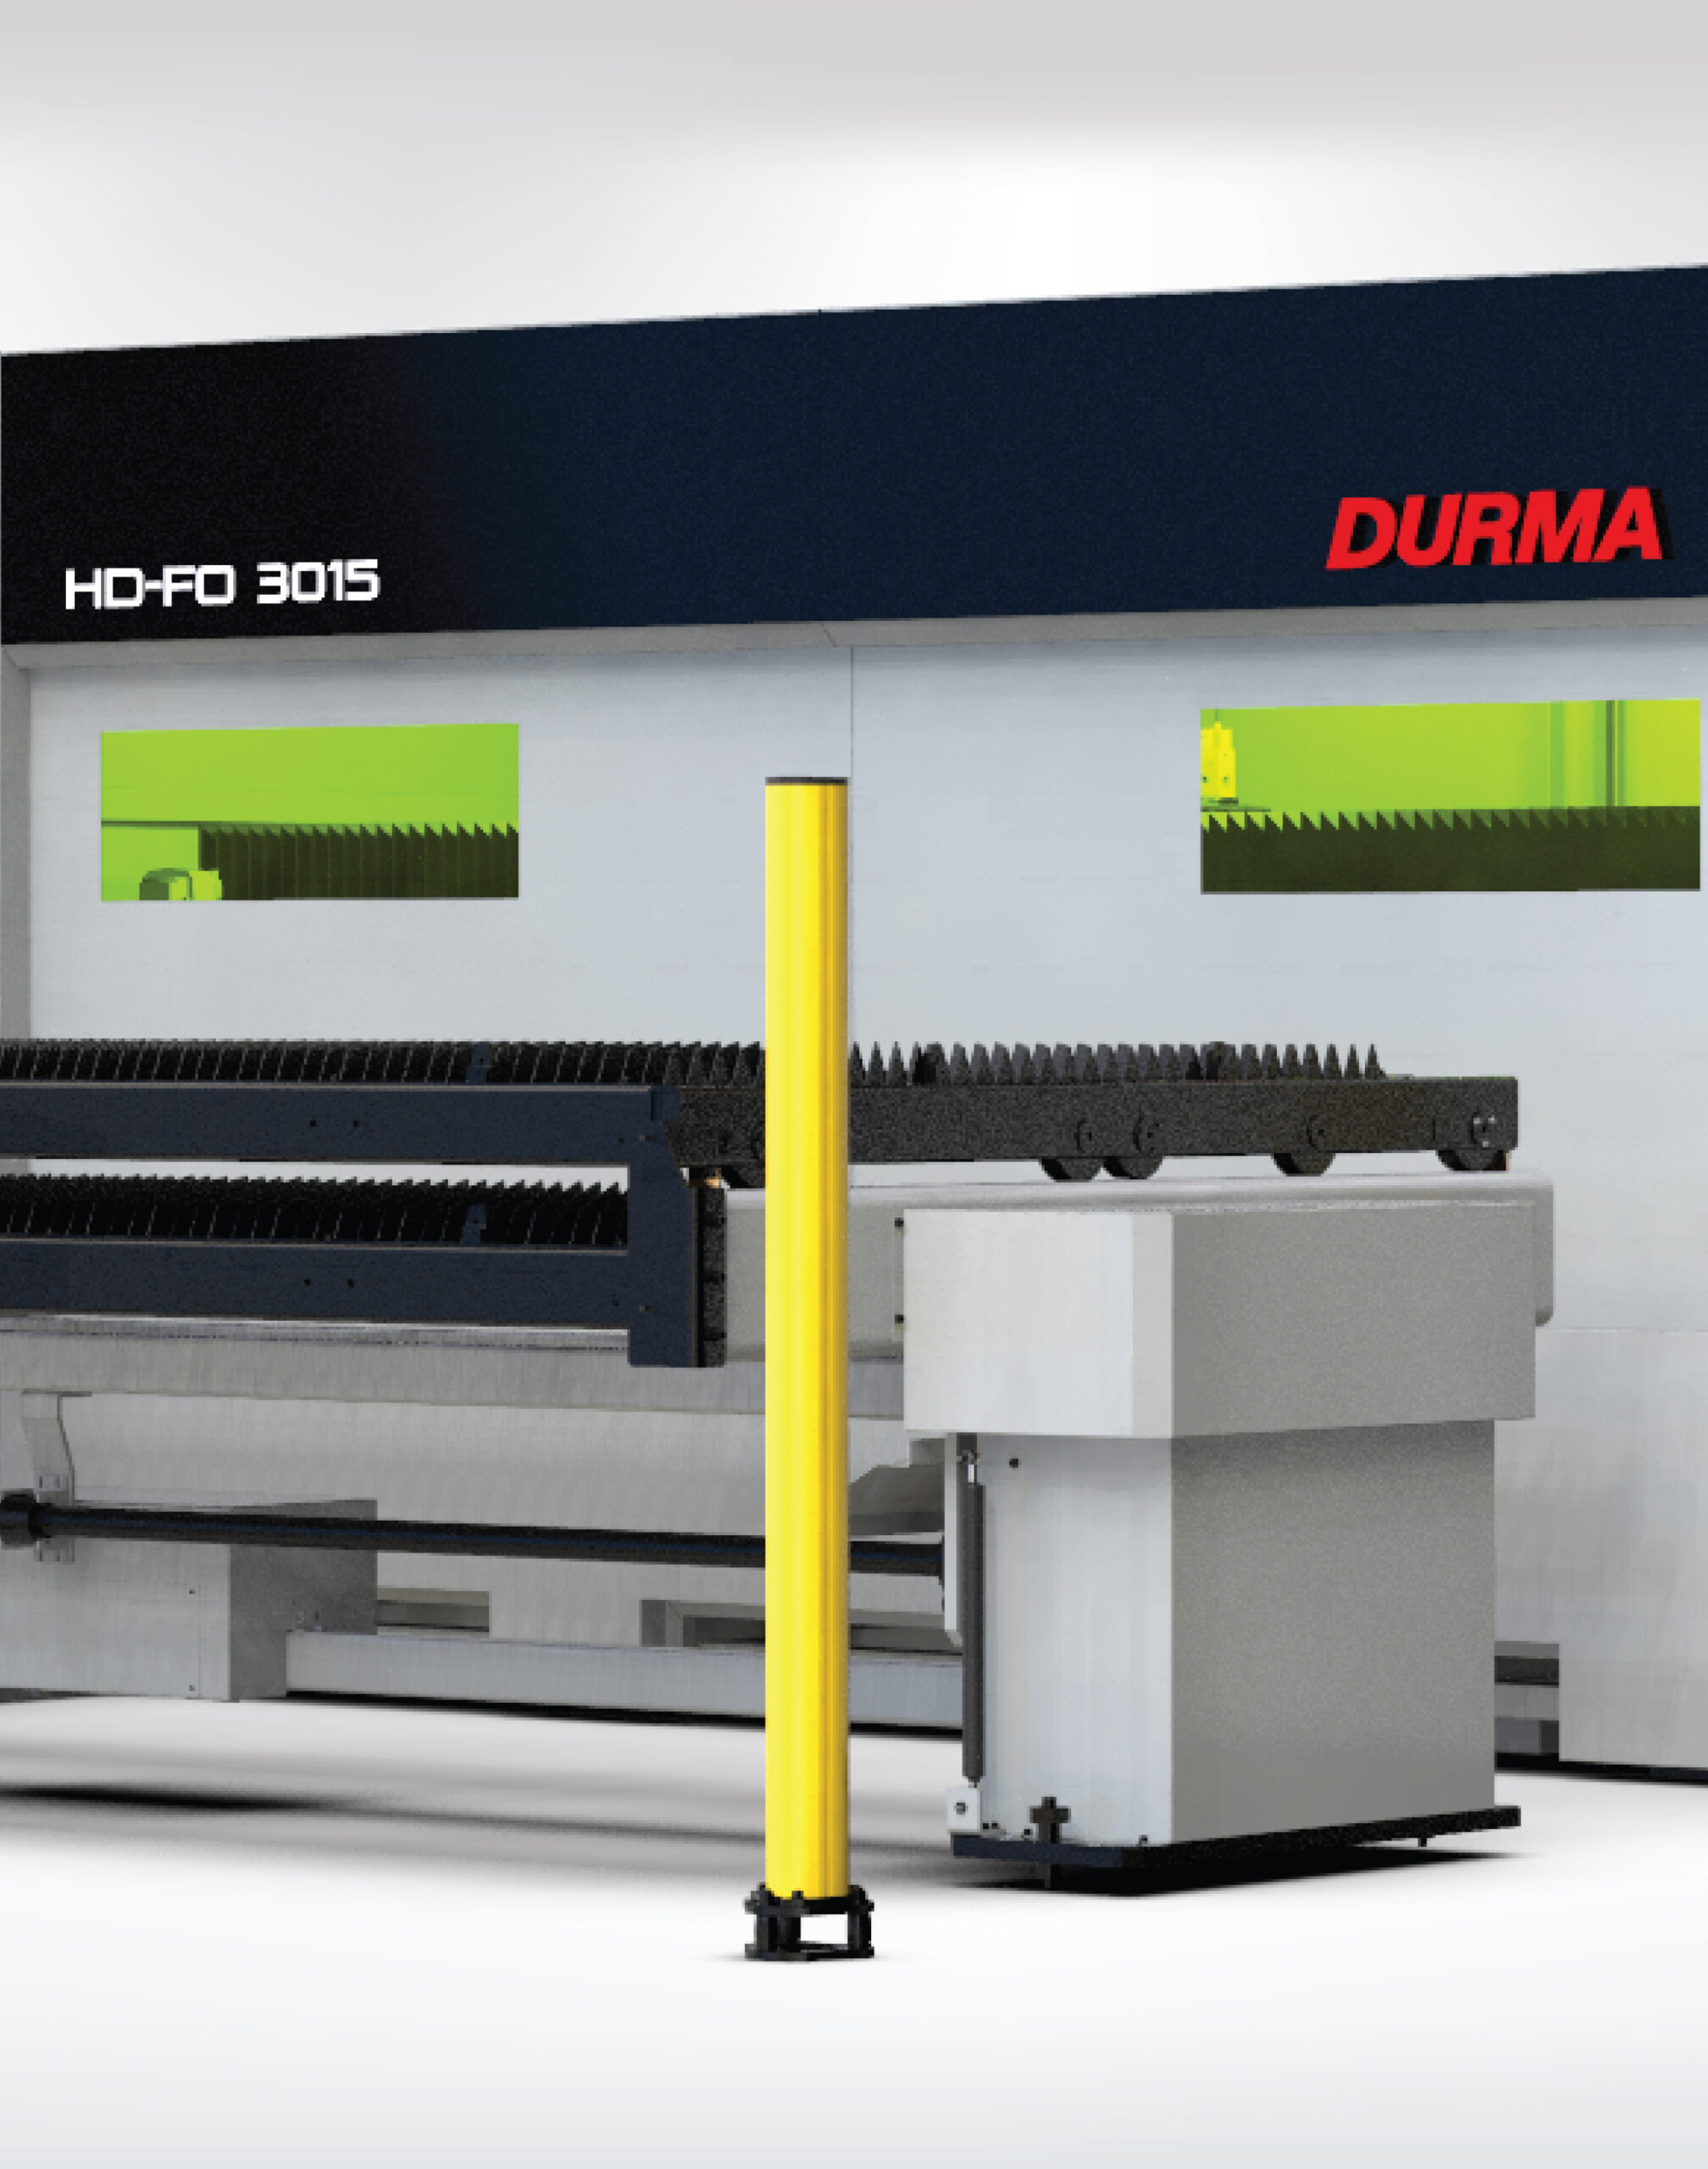 HD-FO Laser Cutting Machine